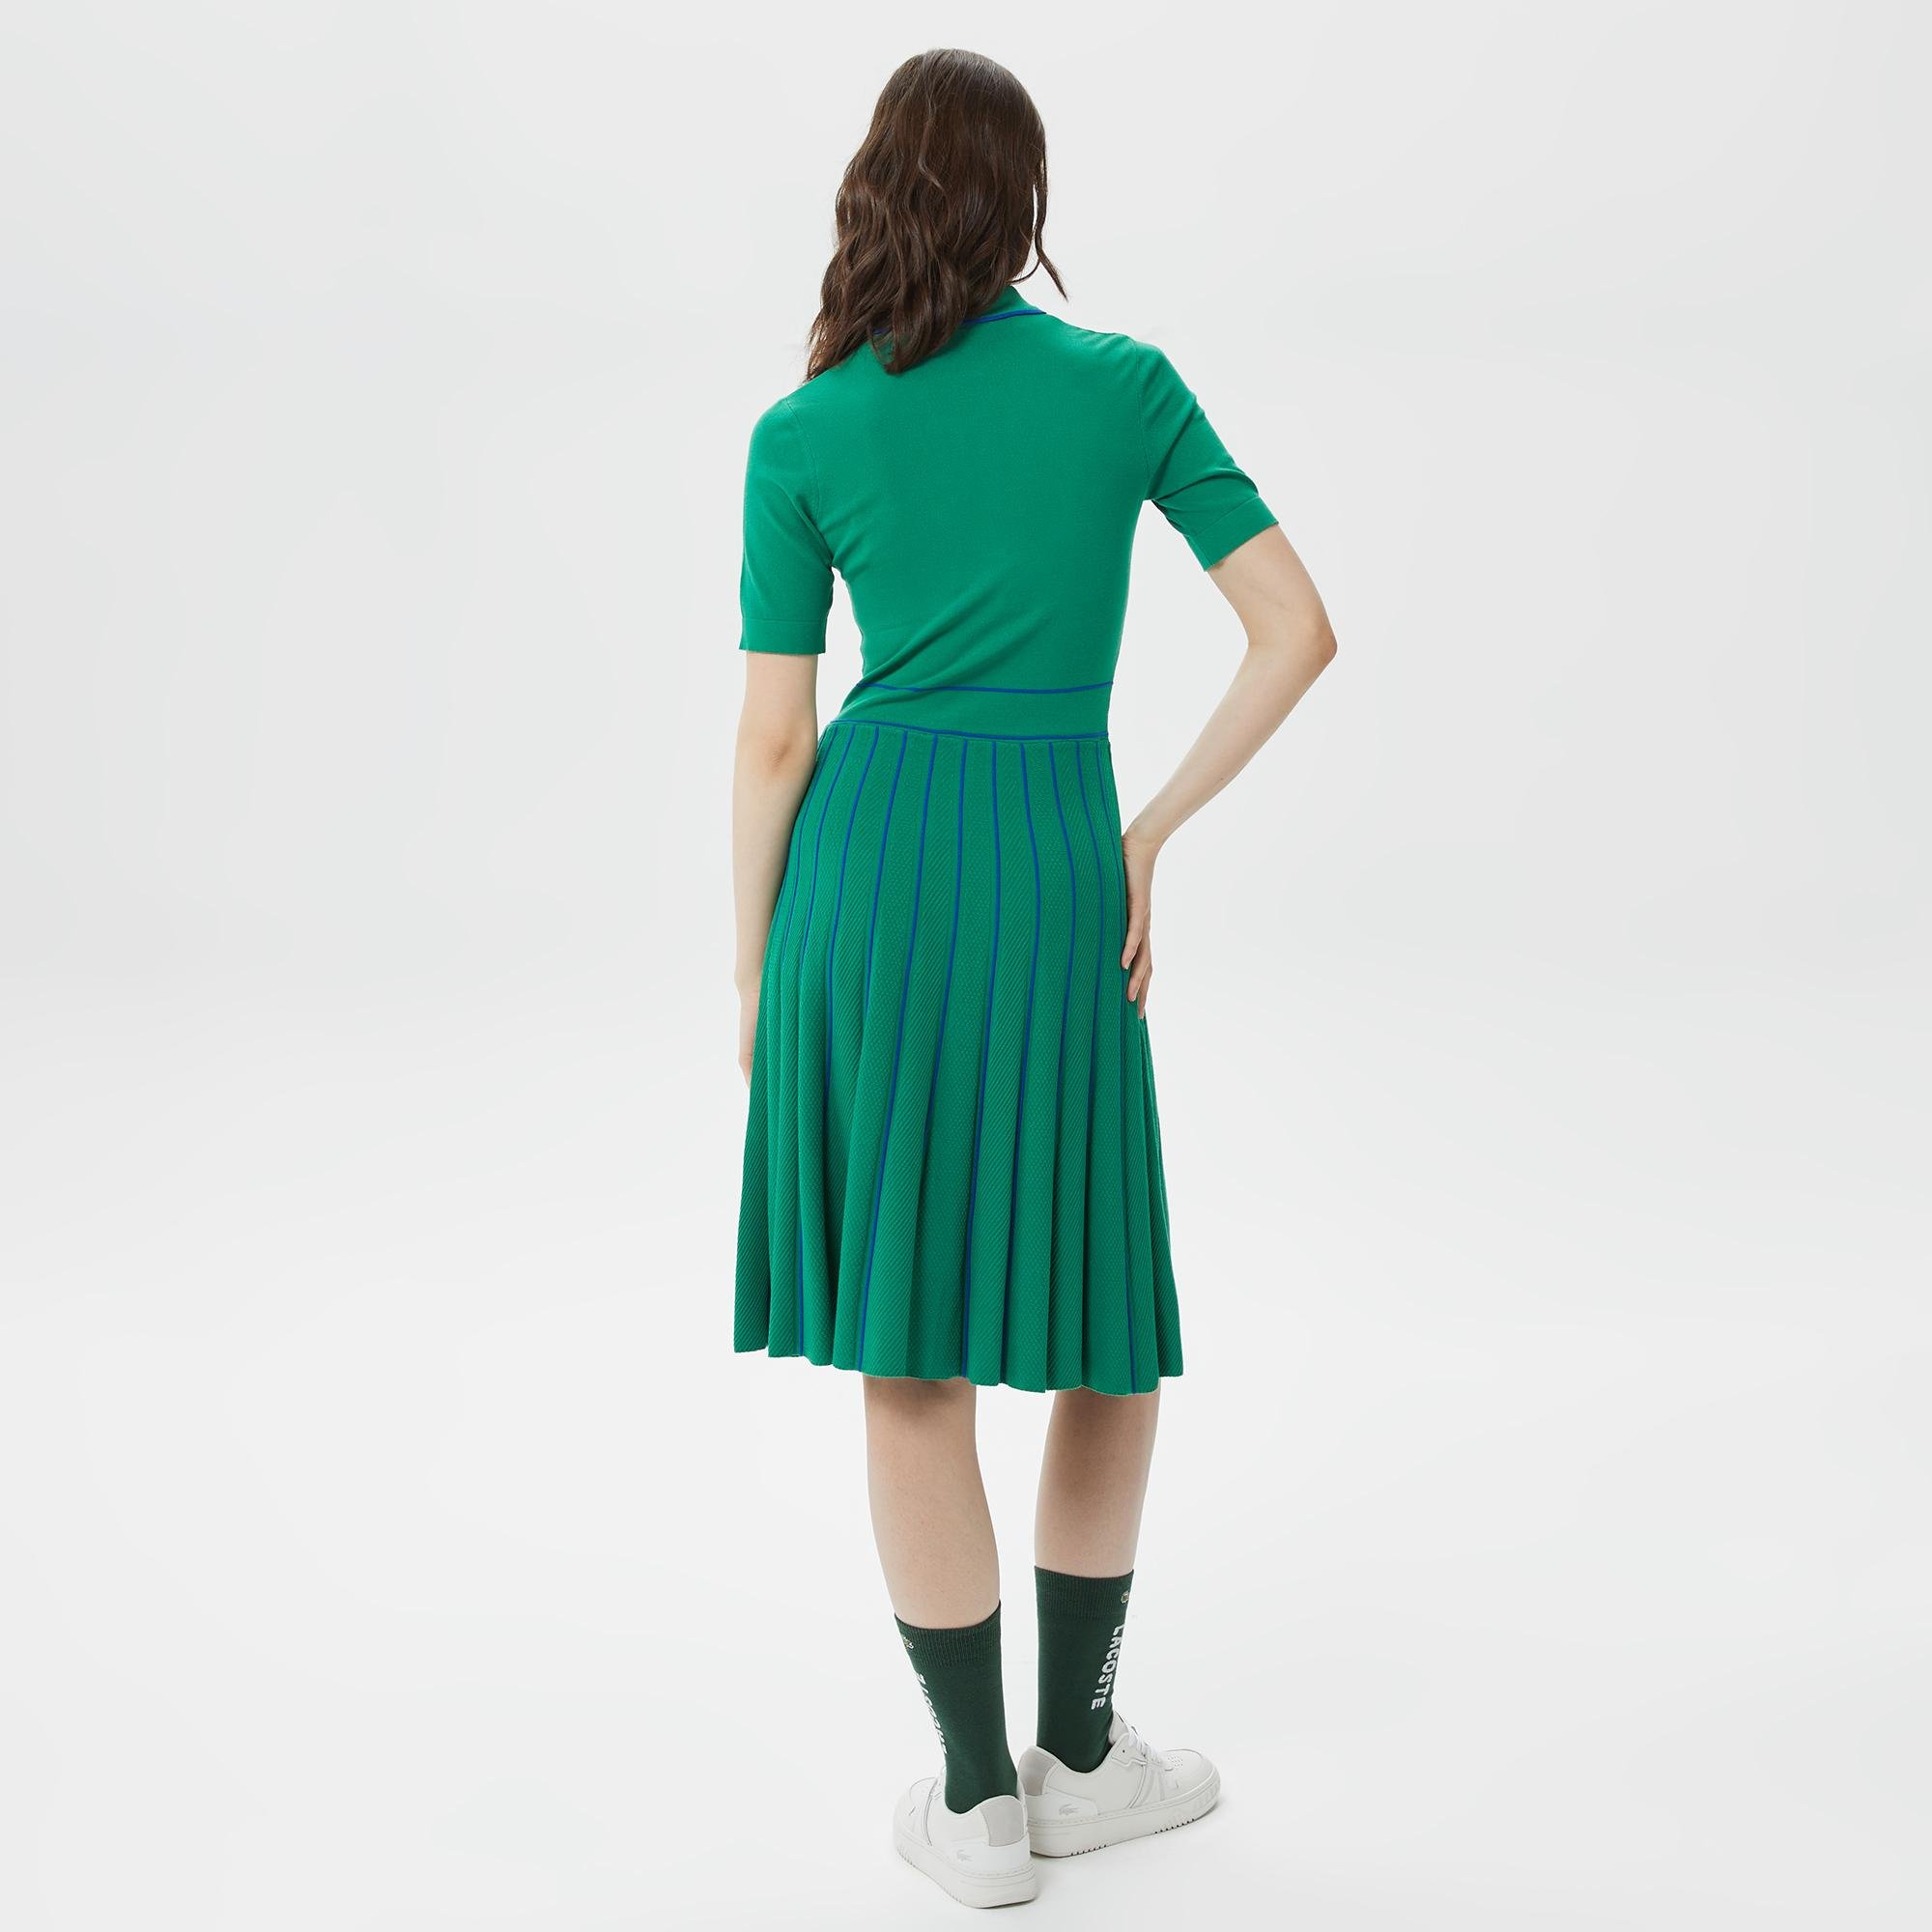 Lacoste Kadın Flare Fit Kısa Kollu Polo Yaka Yeşil Elbise. 2